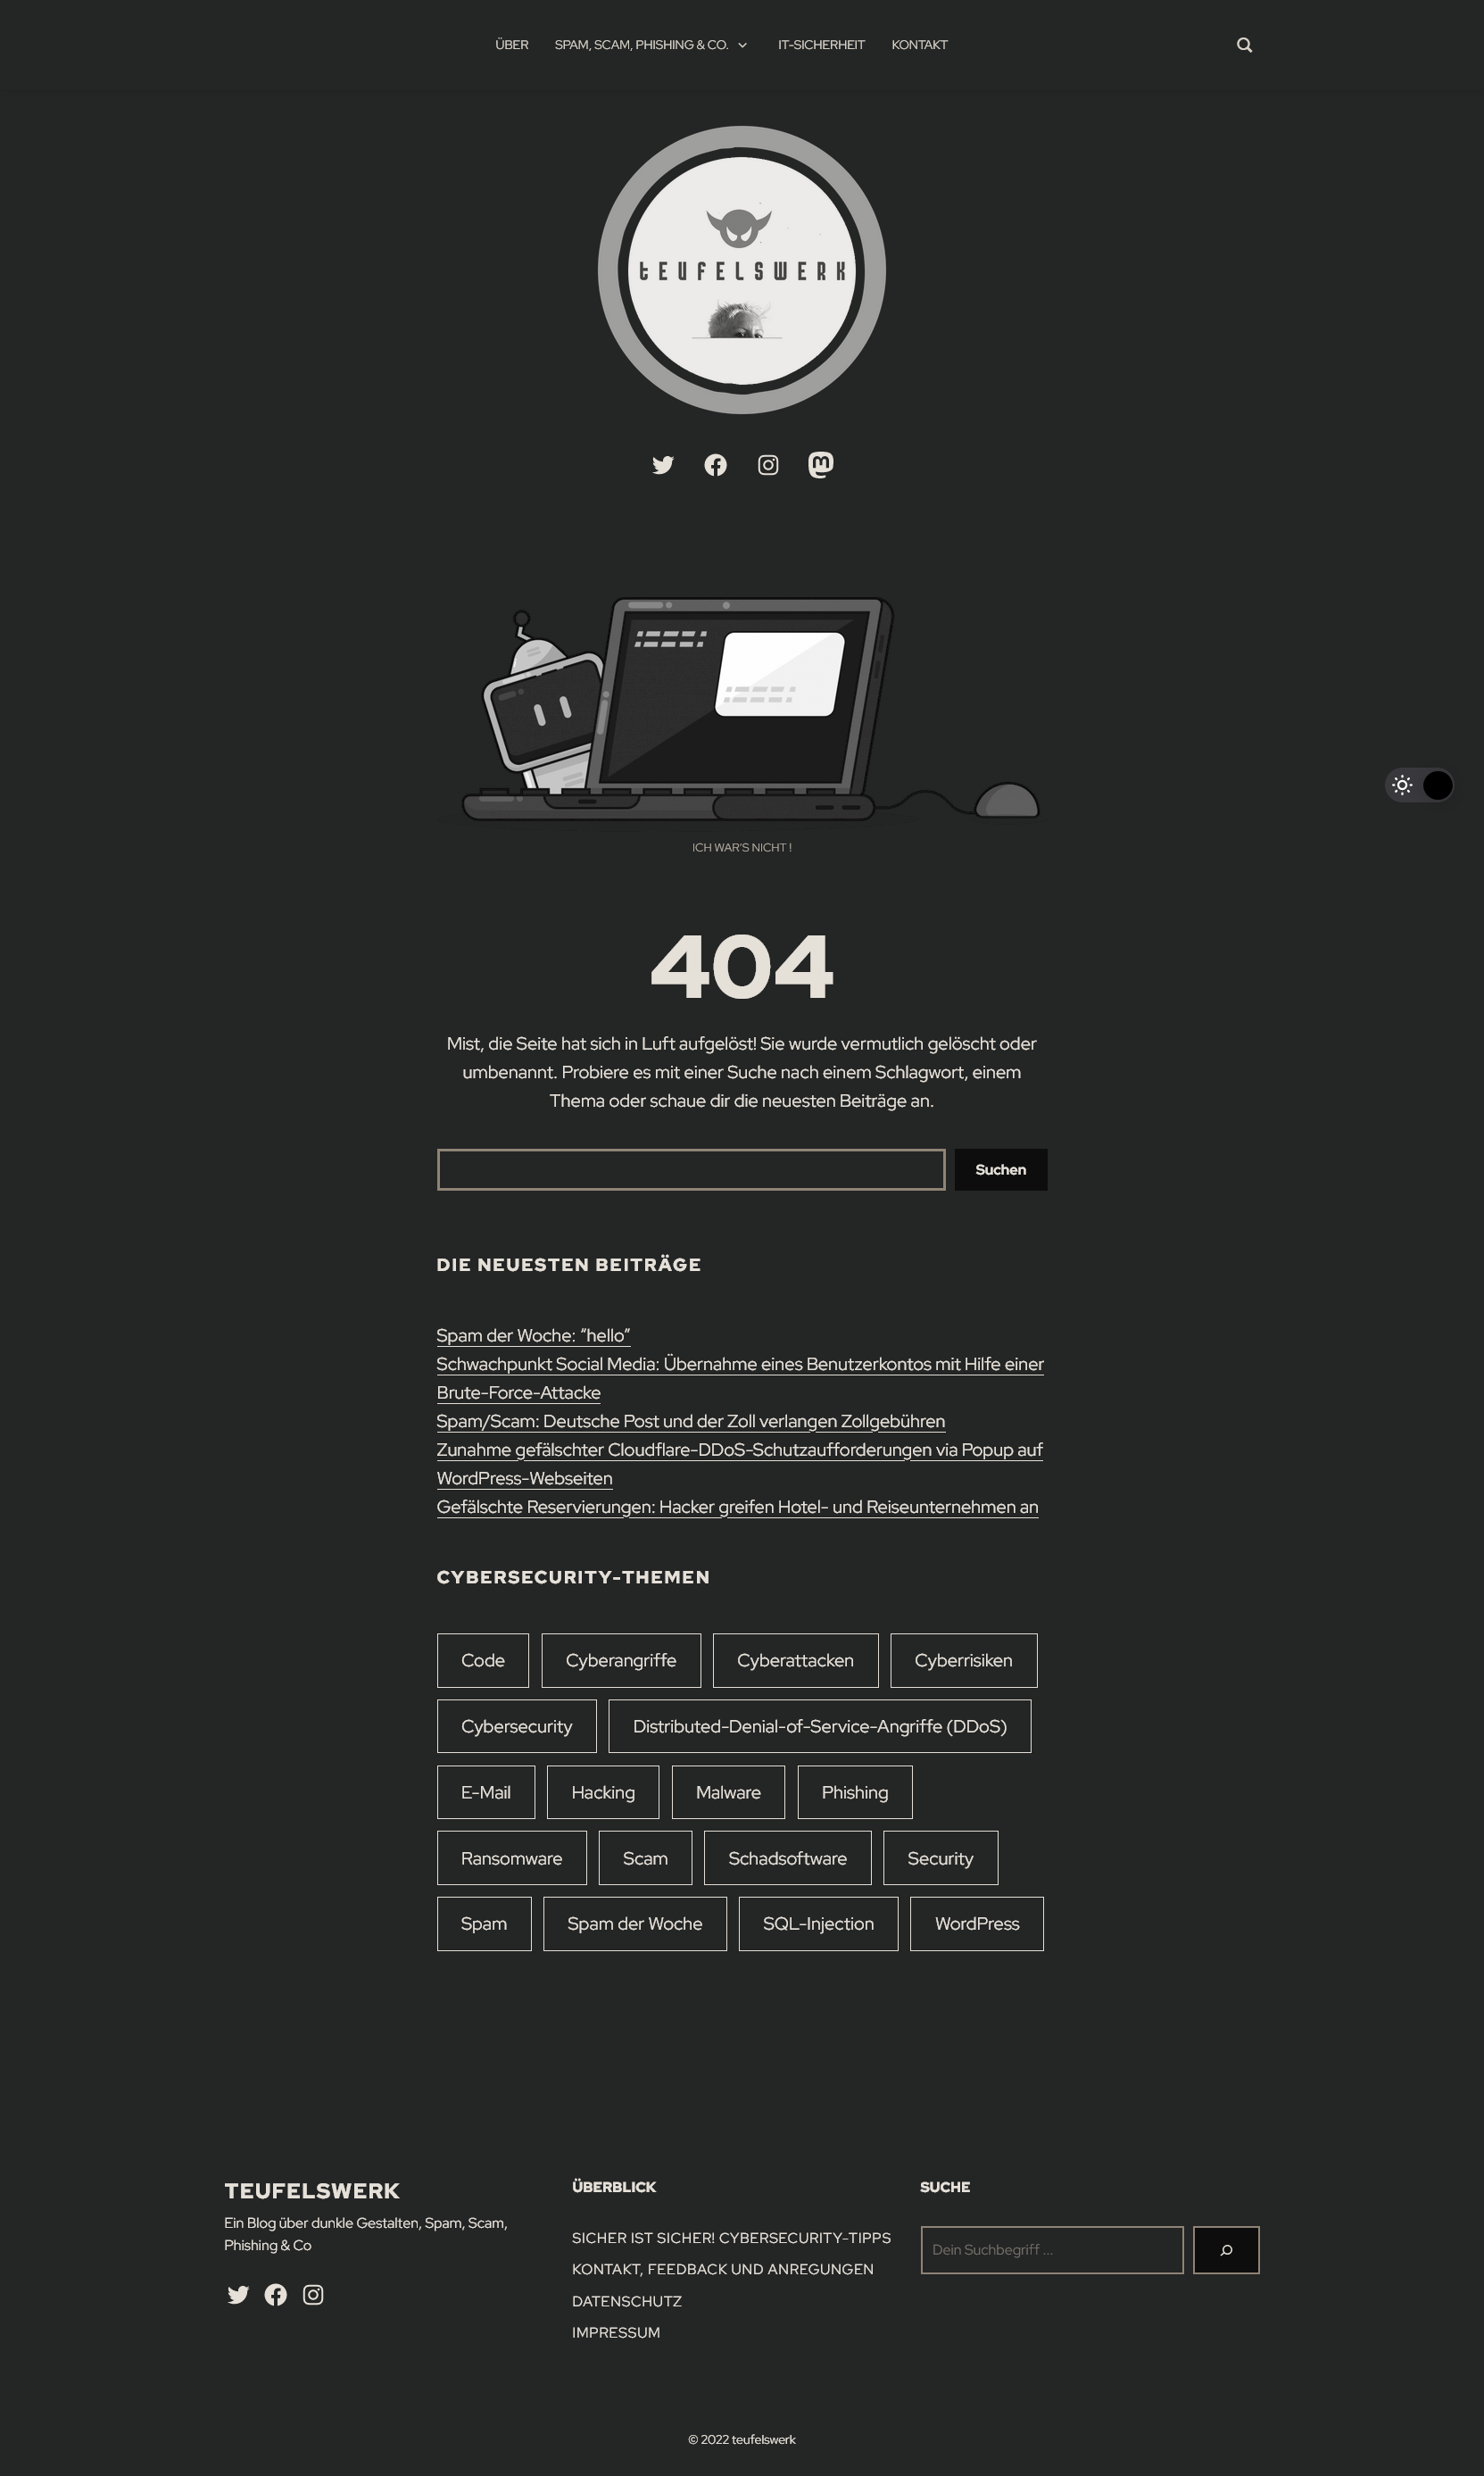 Beispiel 404 Fehlerseite